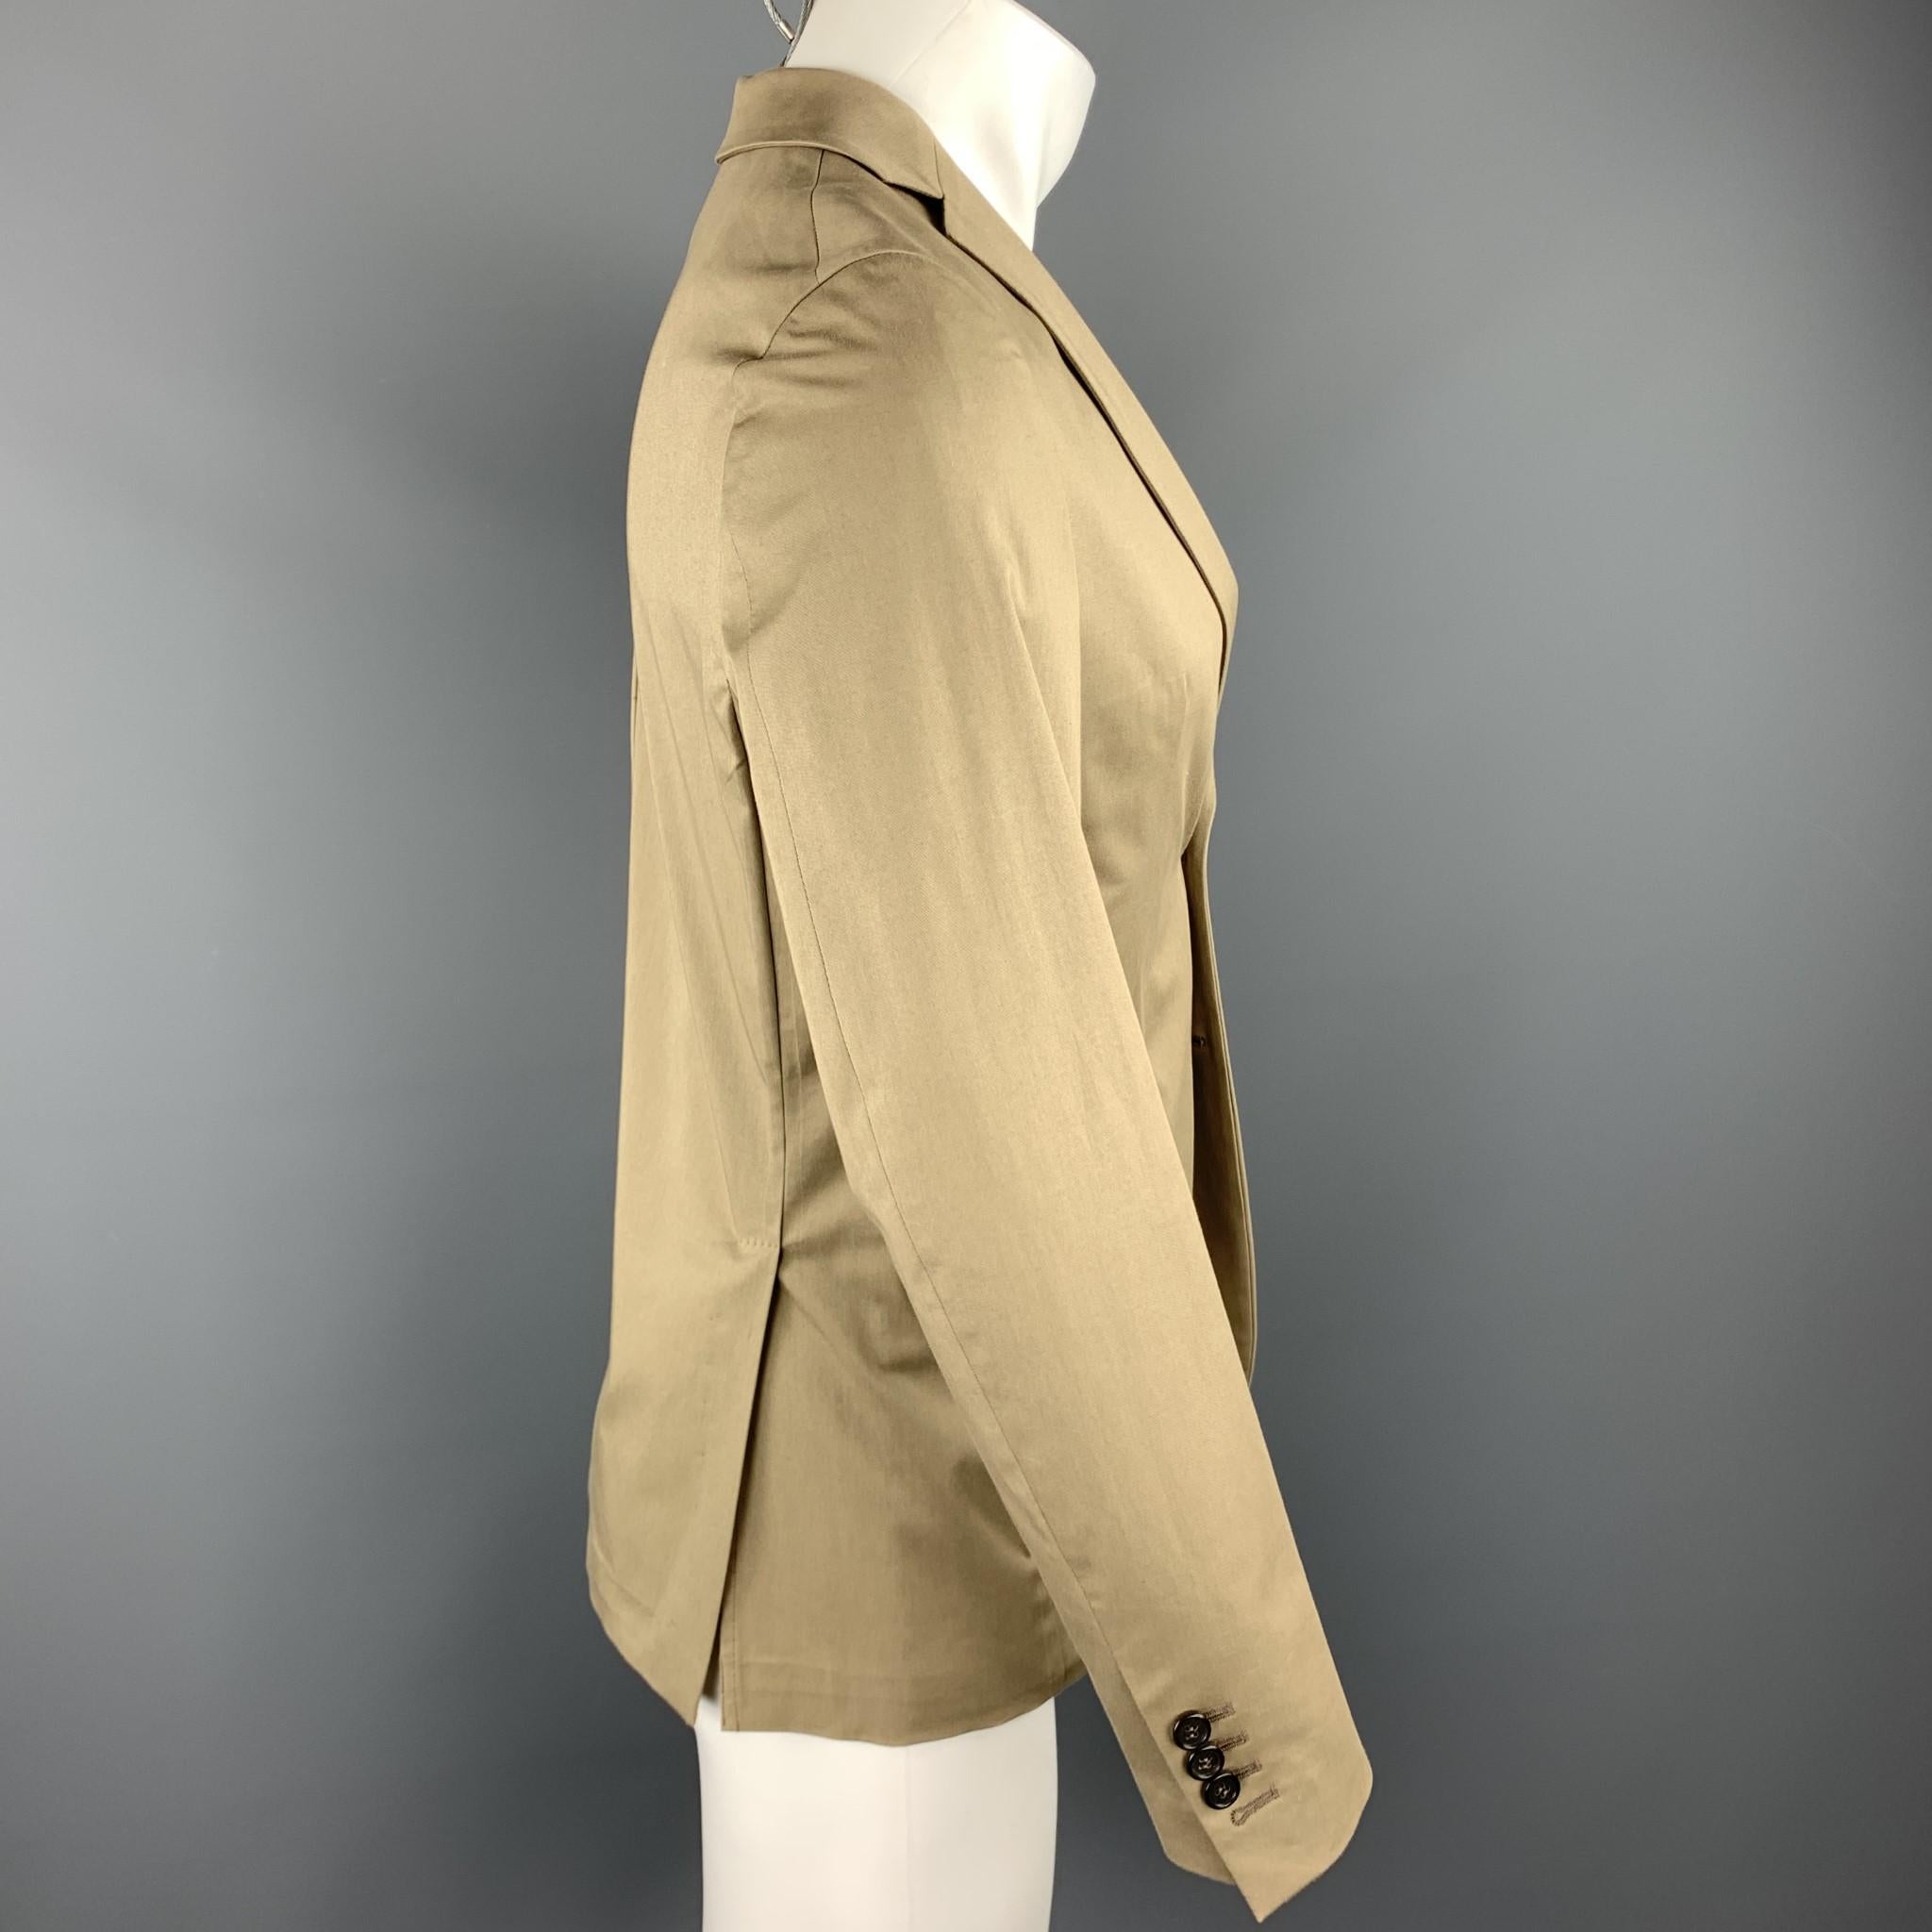 Brown DSQUARED2 Size US 36 / IT 46 Taupe Cotton Blend Notch Lapel Sport Coat Jacket